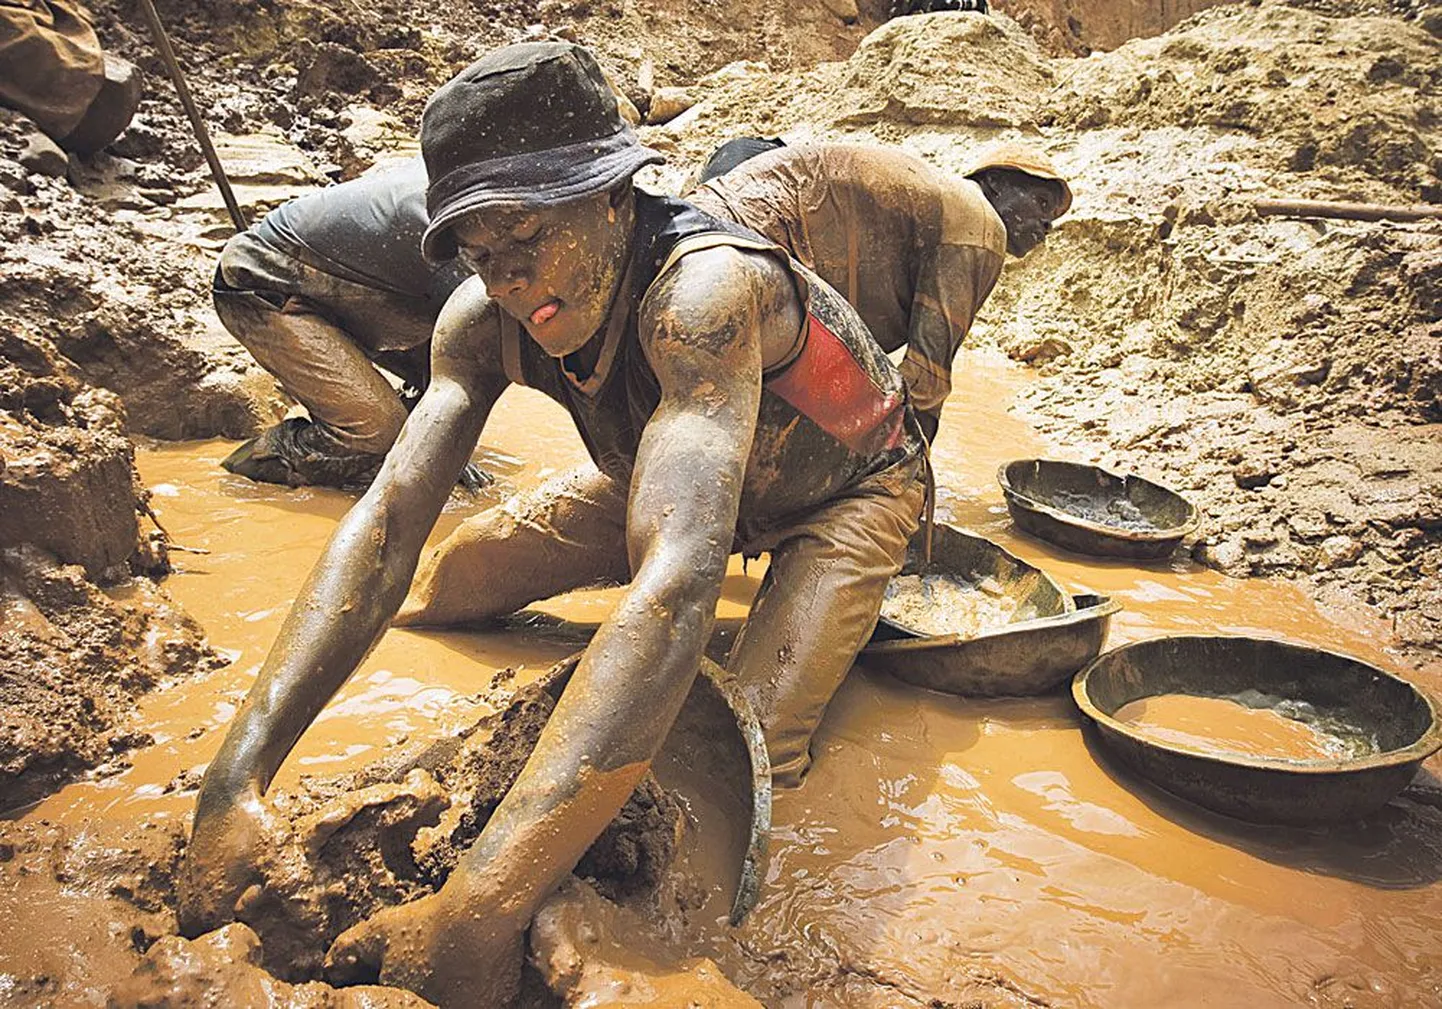 Добыча золота в Конго идет полным ходом, а у Эстонии пока даже нет государственной стратегии по финансированию разведки полезных ископаемых.